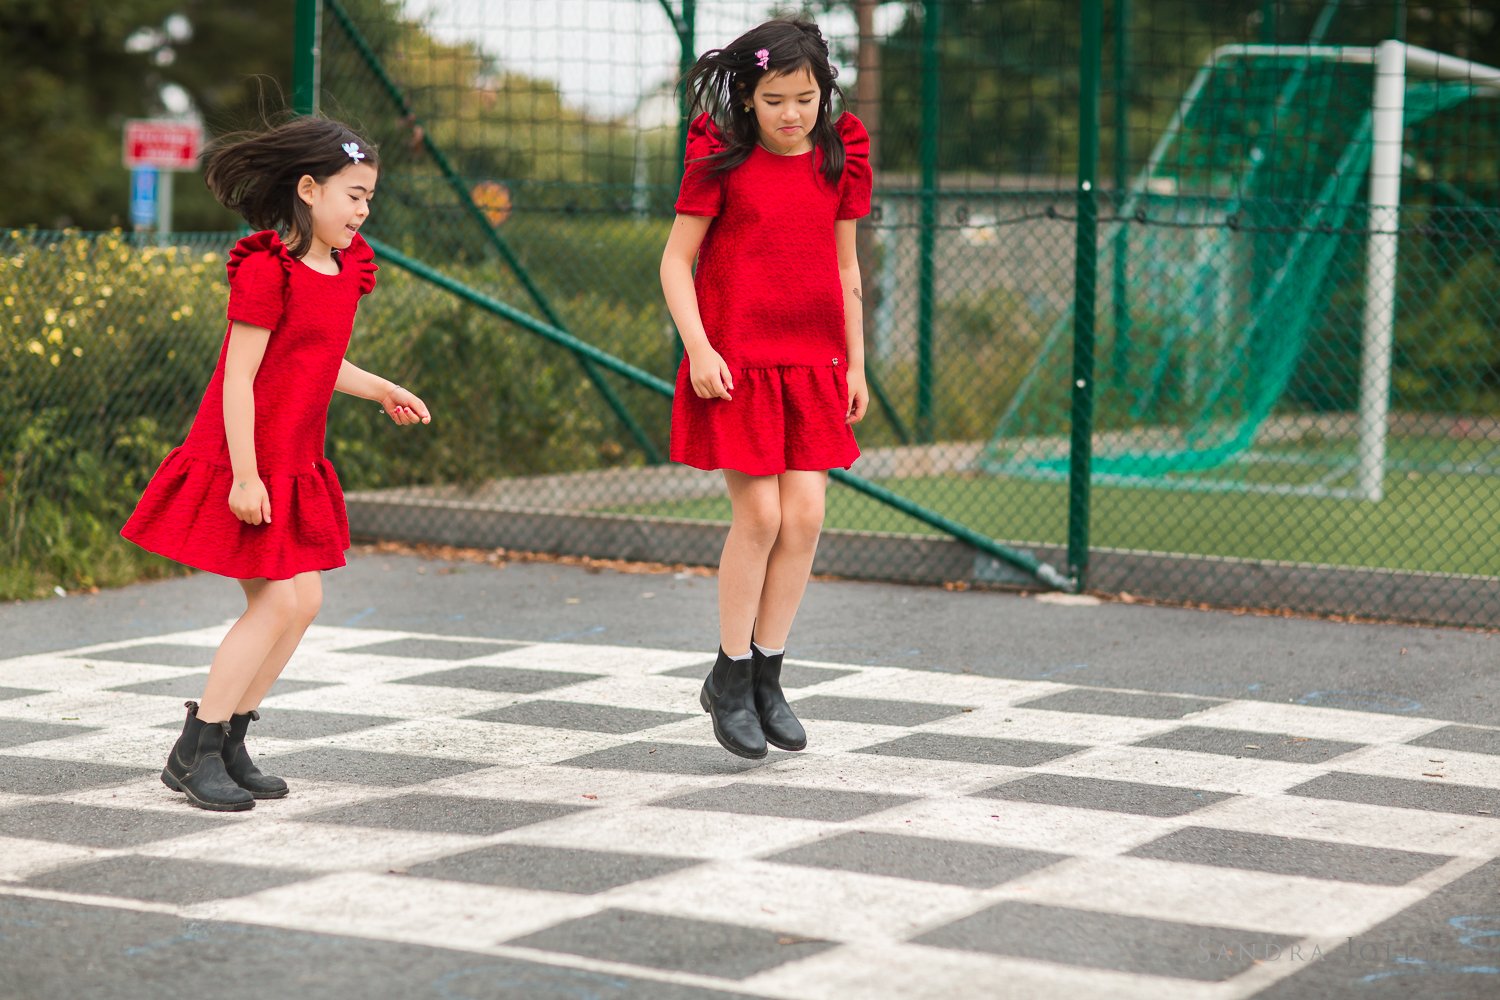 girls-playing-hopscotch.jpg